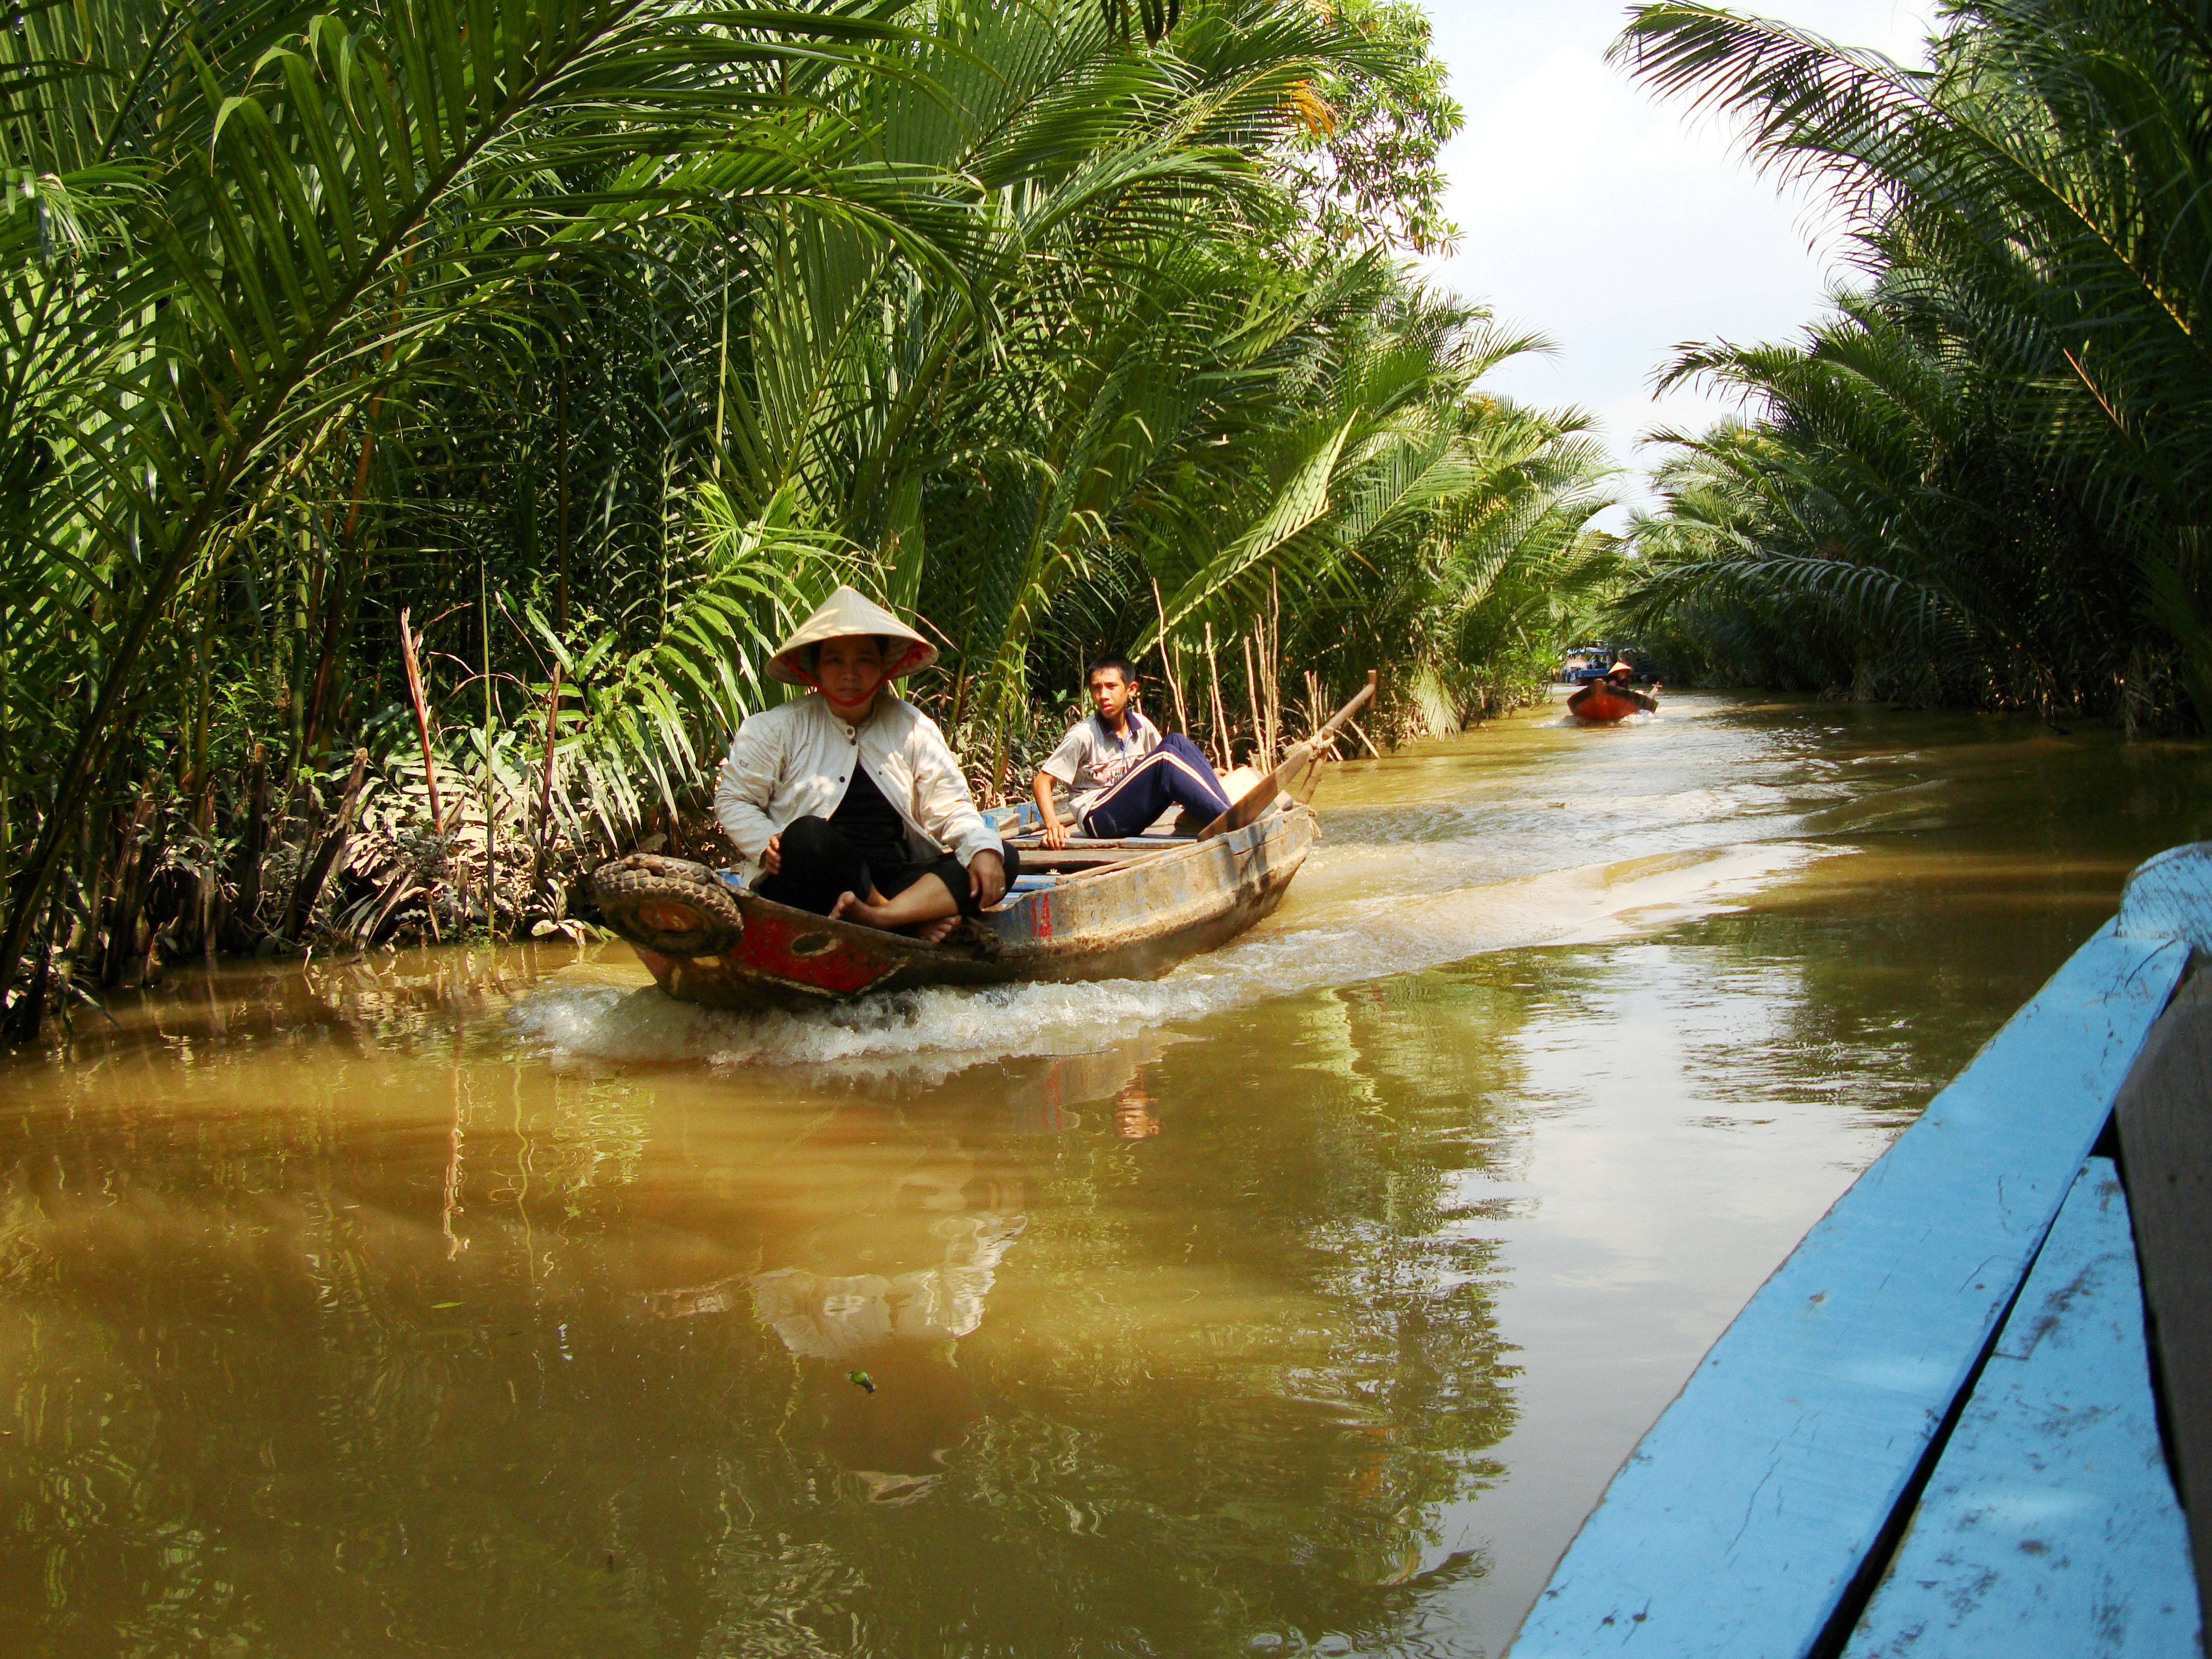 Кампонг чам. про бамбуковый мост через меконг и автостоп на севере камбоджи « justravellers.com